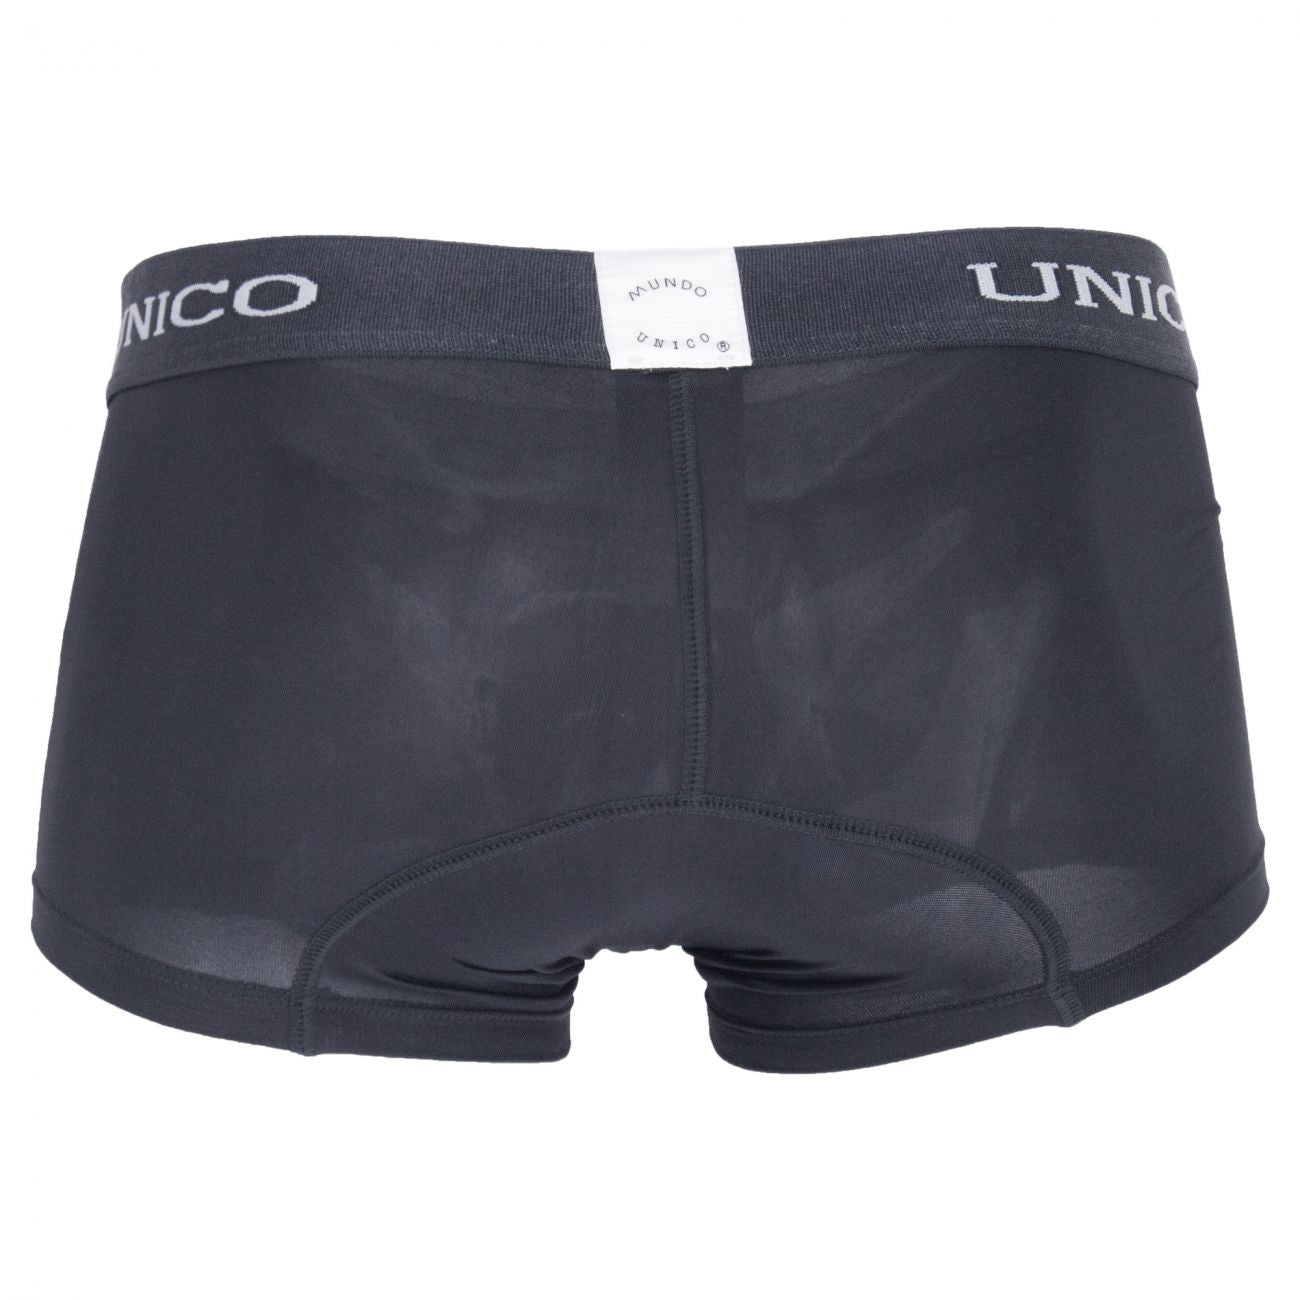 Unico 1200080396 Boxer Briefs Asfalto Gray